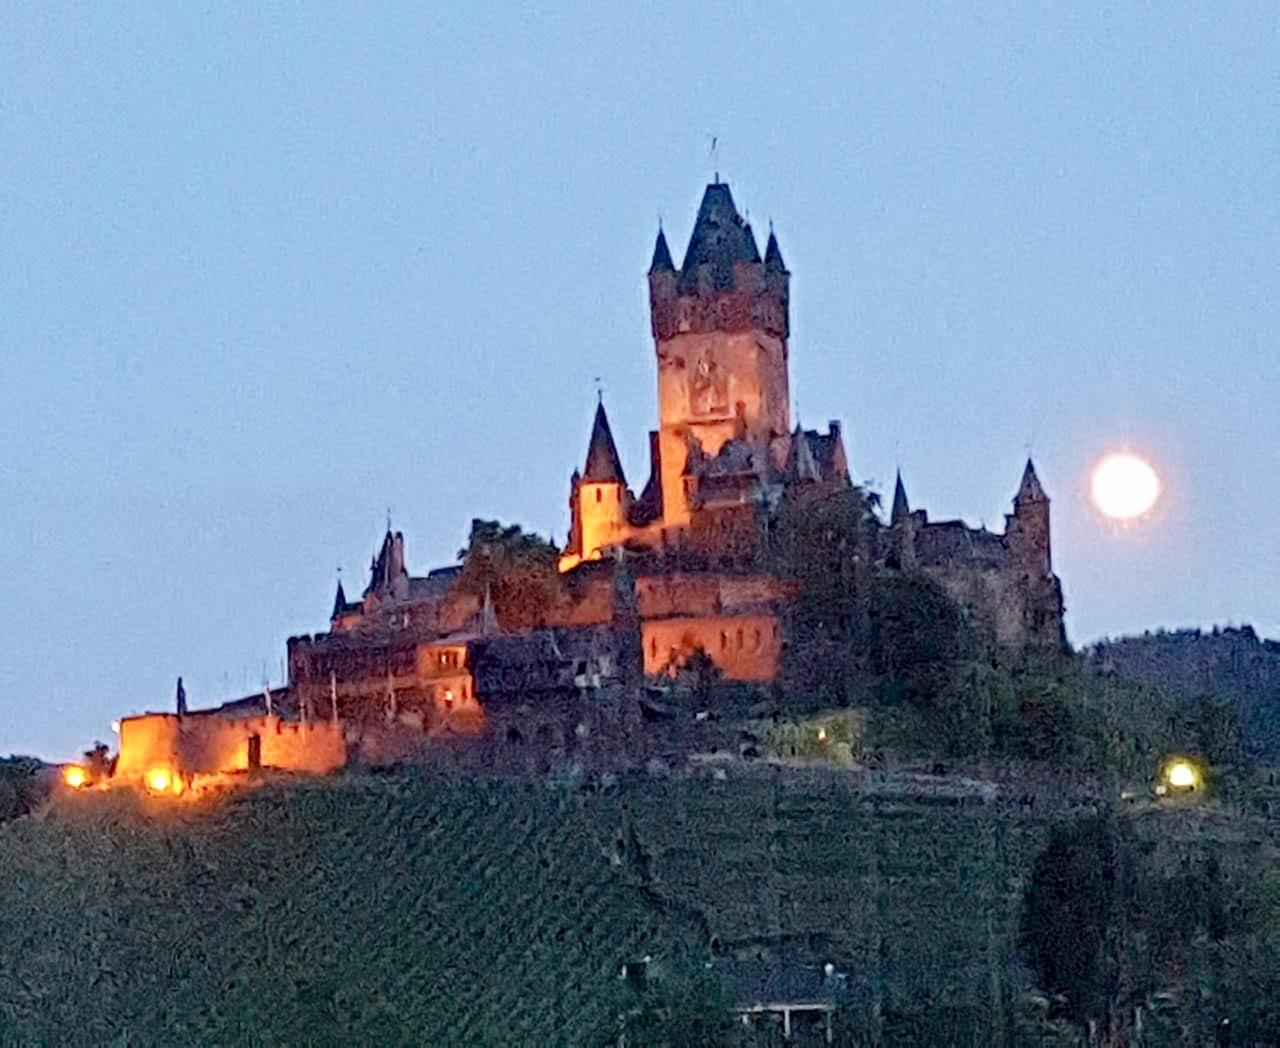 Terrassenblick auf die Burg